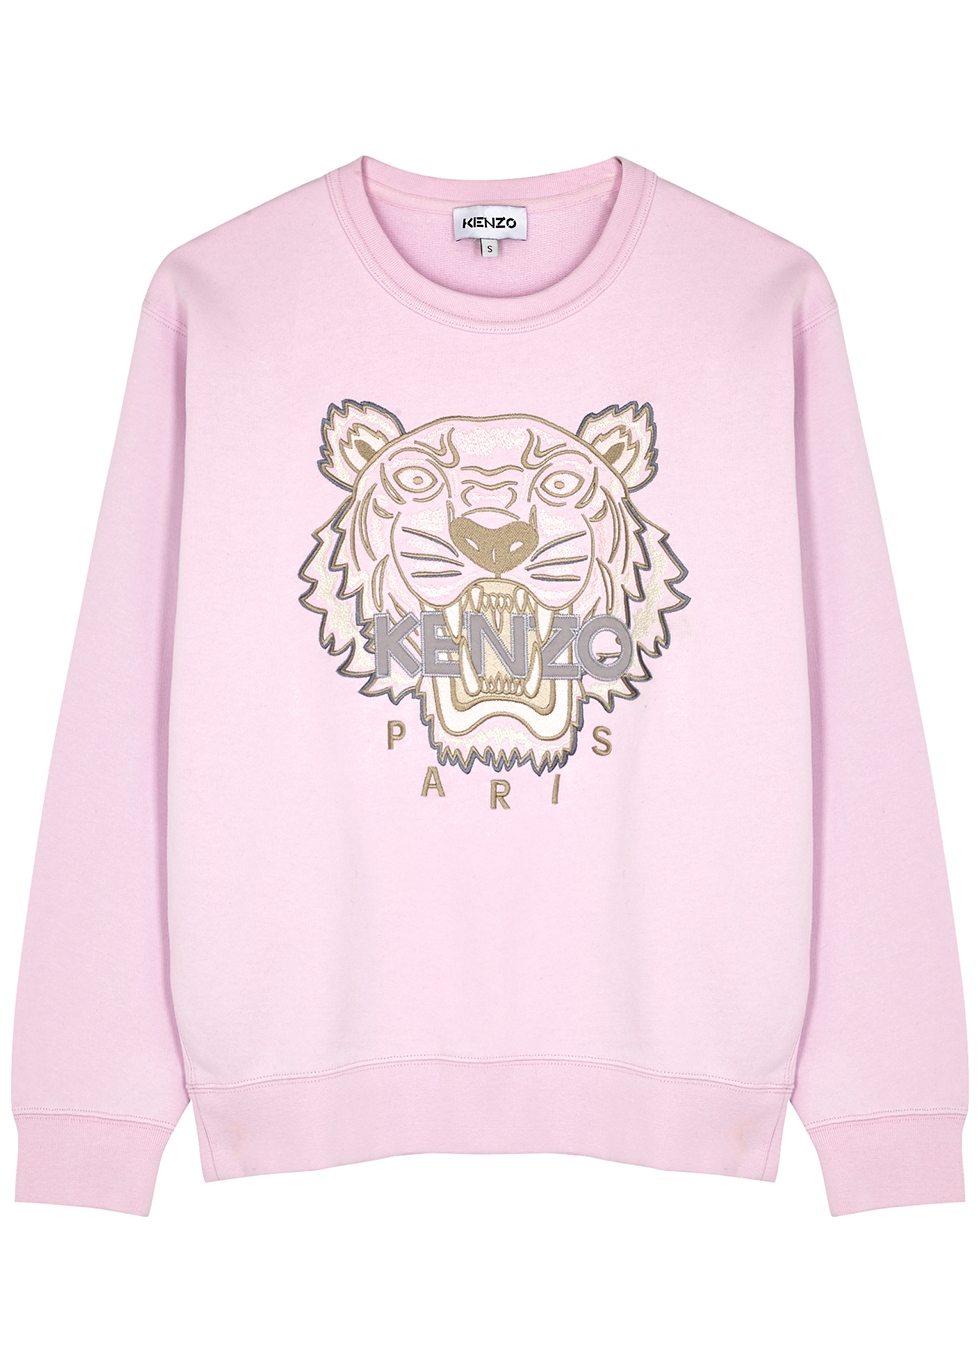 pink kenzo hoodie